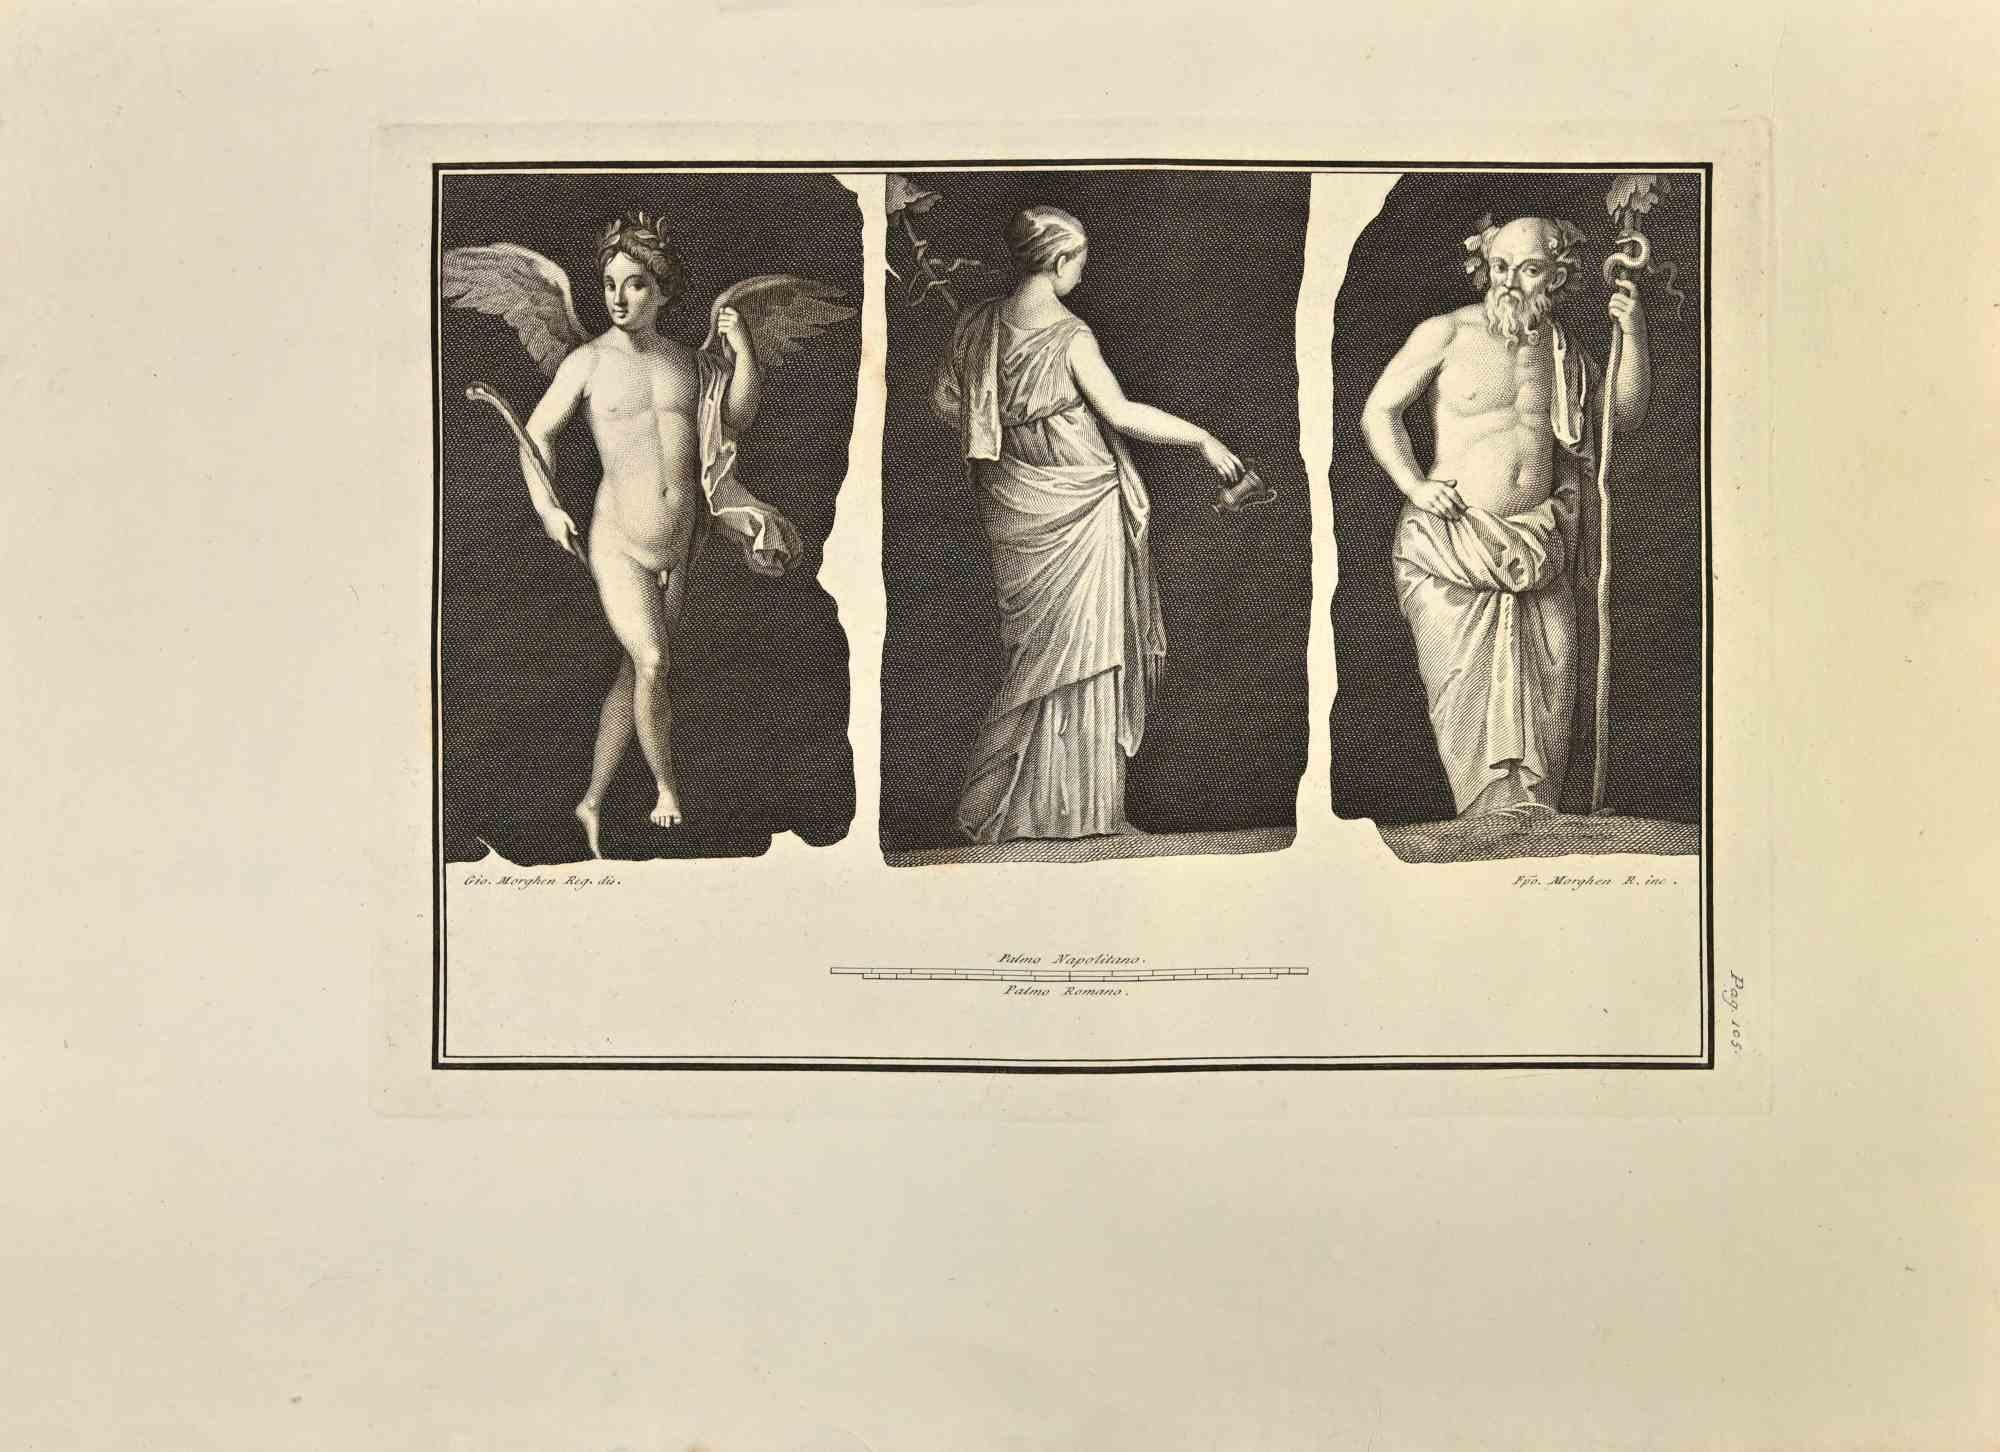 Pan Lehre  Daphnis To Play aus "Antiquities of Herculaneum" ist eine Radierung auf Papier von Carlo Cataneo aus dem 18. Jahrhundert.

Signiert auf der Platte.

Guter Zustand mit einigen Faltungen.

Die Radierung gehört zu der Druckserie "Antiquities